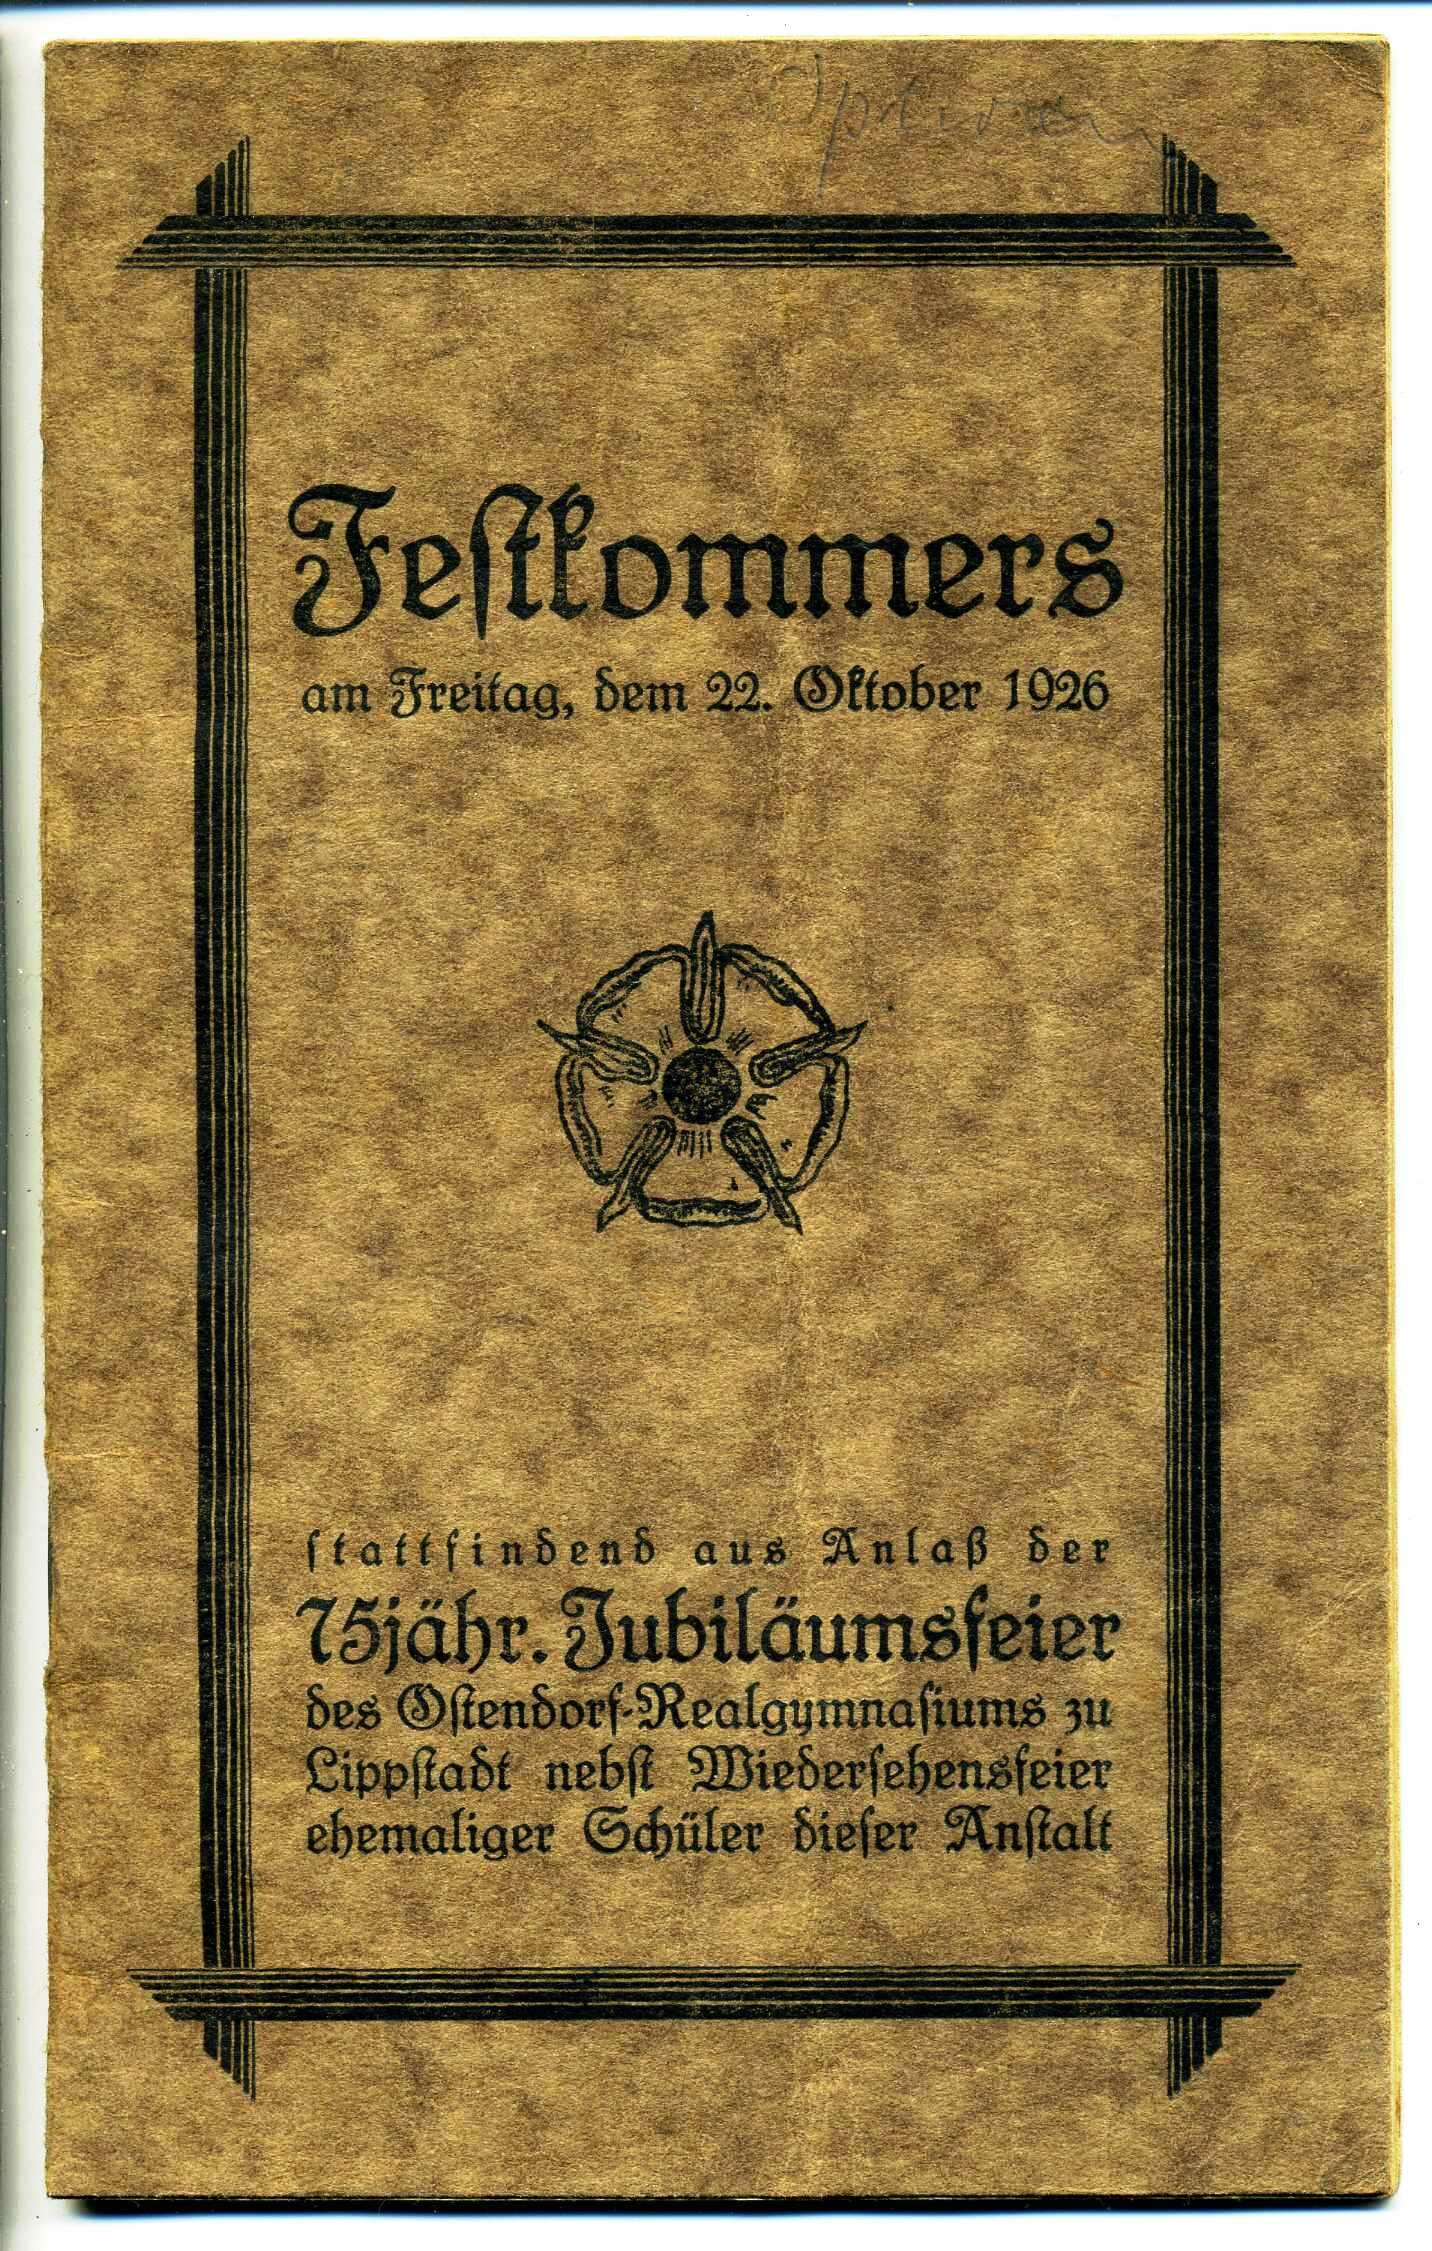 Festschrift zum 75-jährigen Jubiläum des Ostendorf Realgymnasiums Lippstadt (Stadtmuseum Lippstadt RR-F)